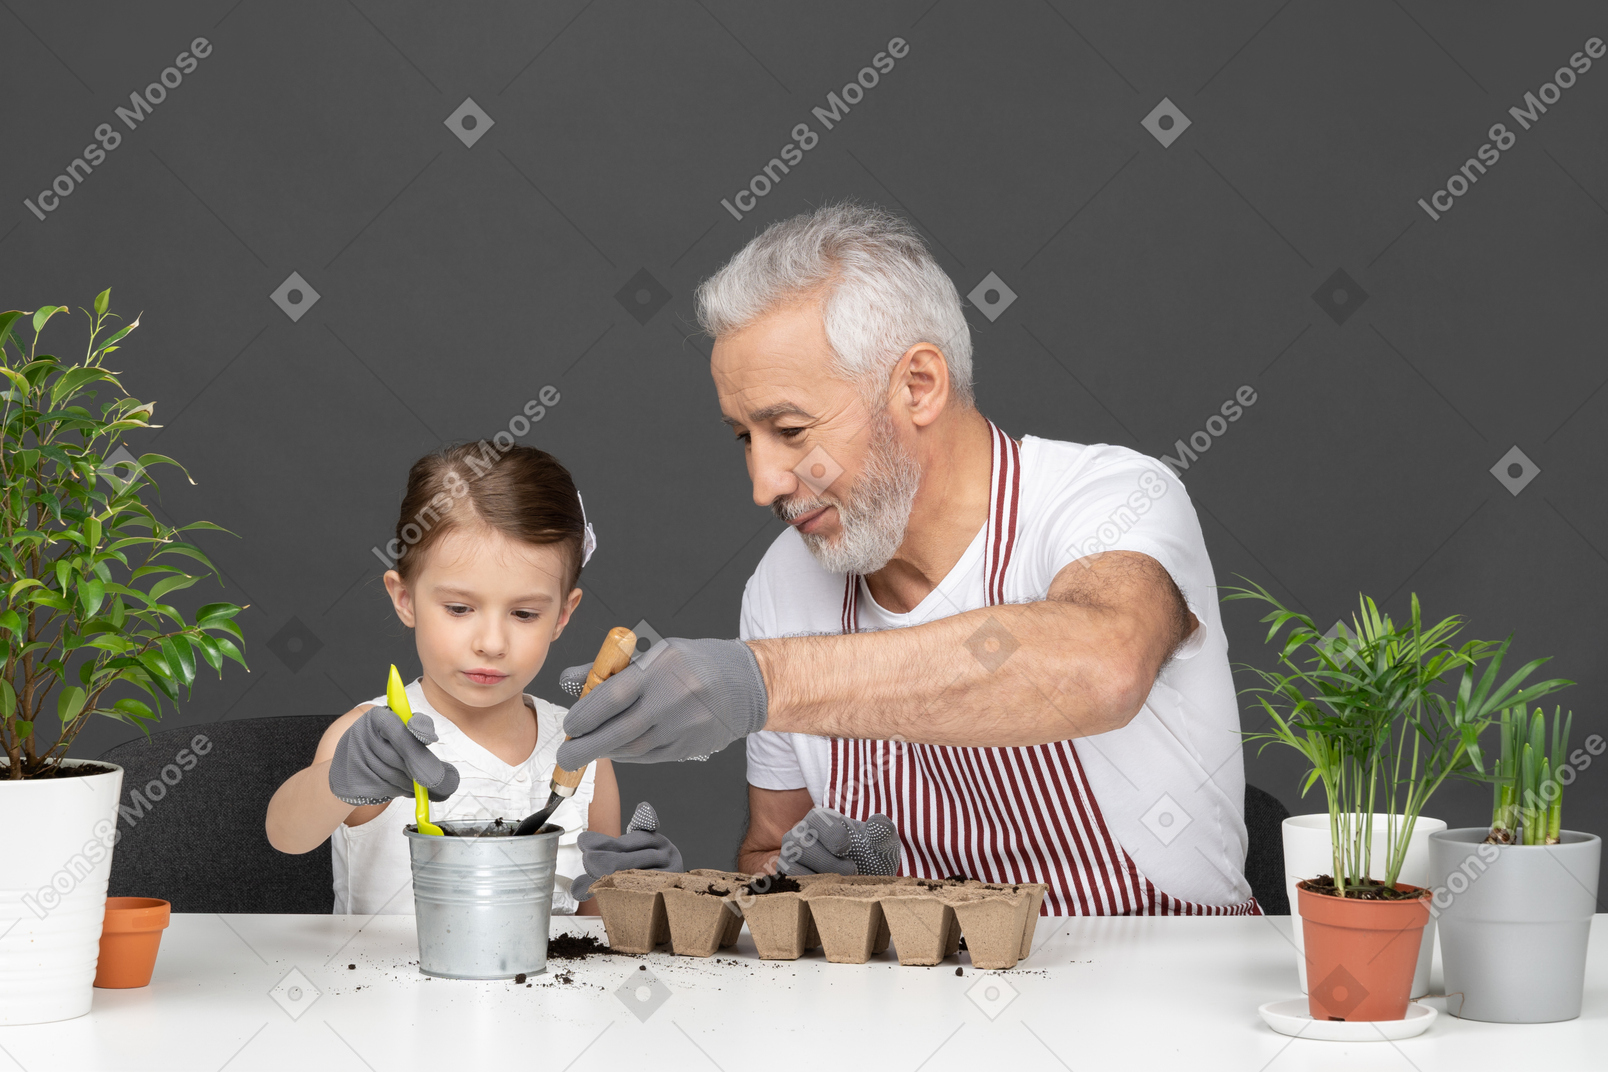 Little girl and mature man gardening